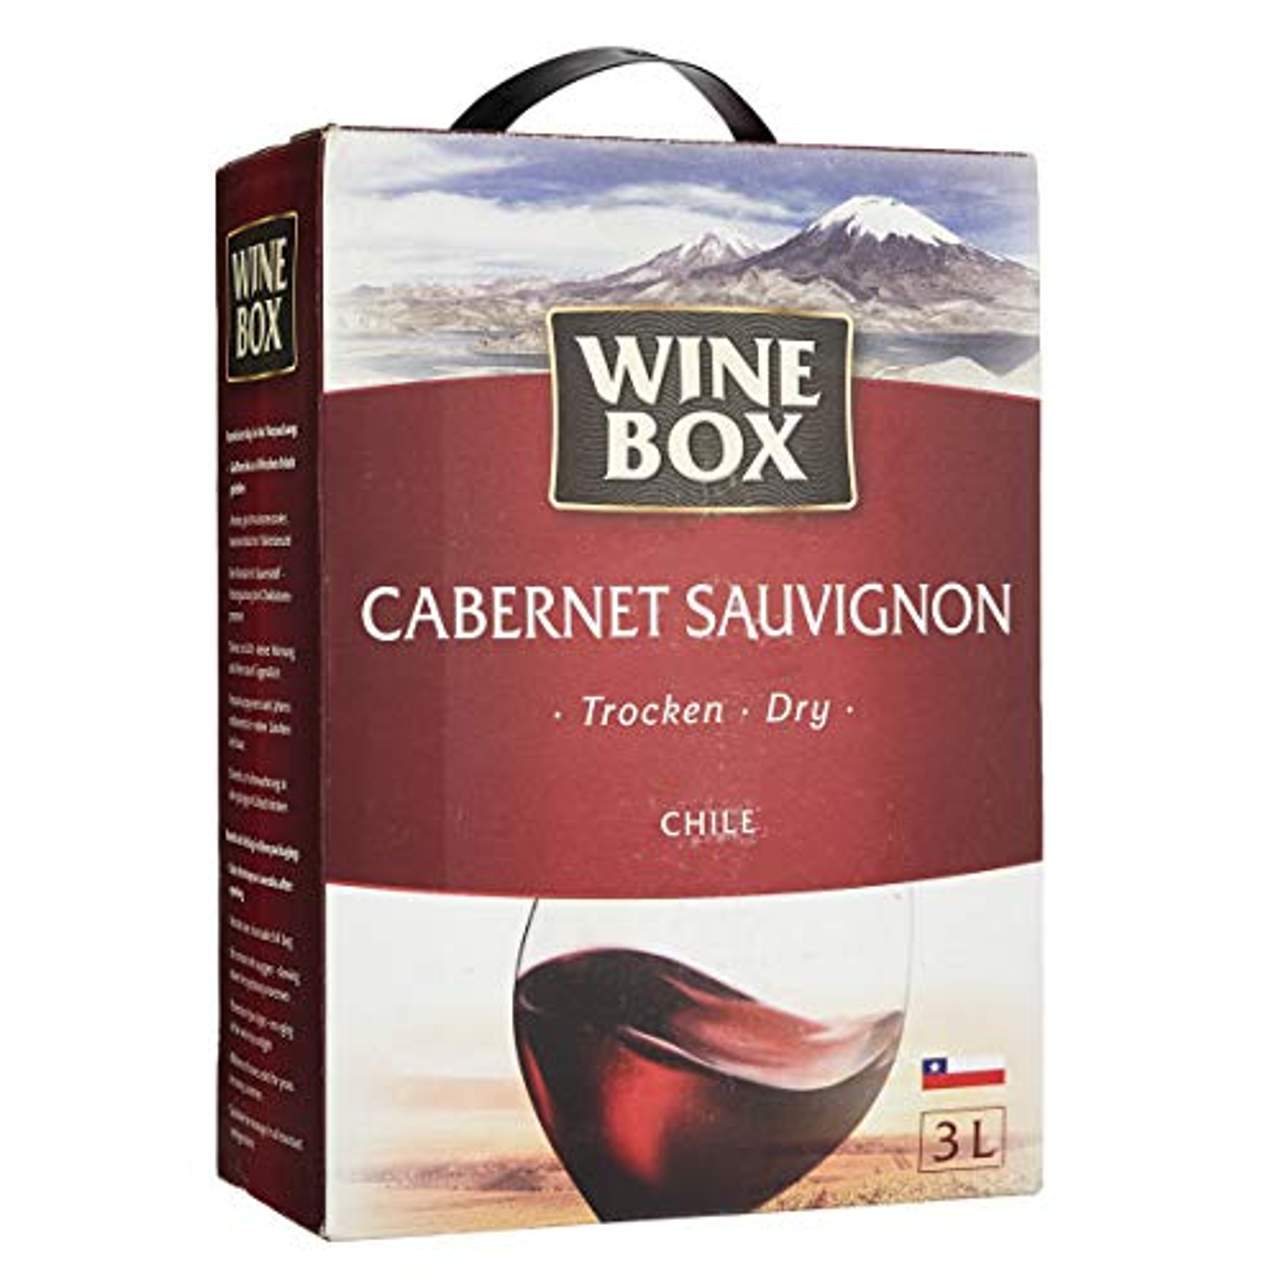 Wine Box Cabernet Sauvignon Chile trocken Bag-in-Box